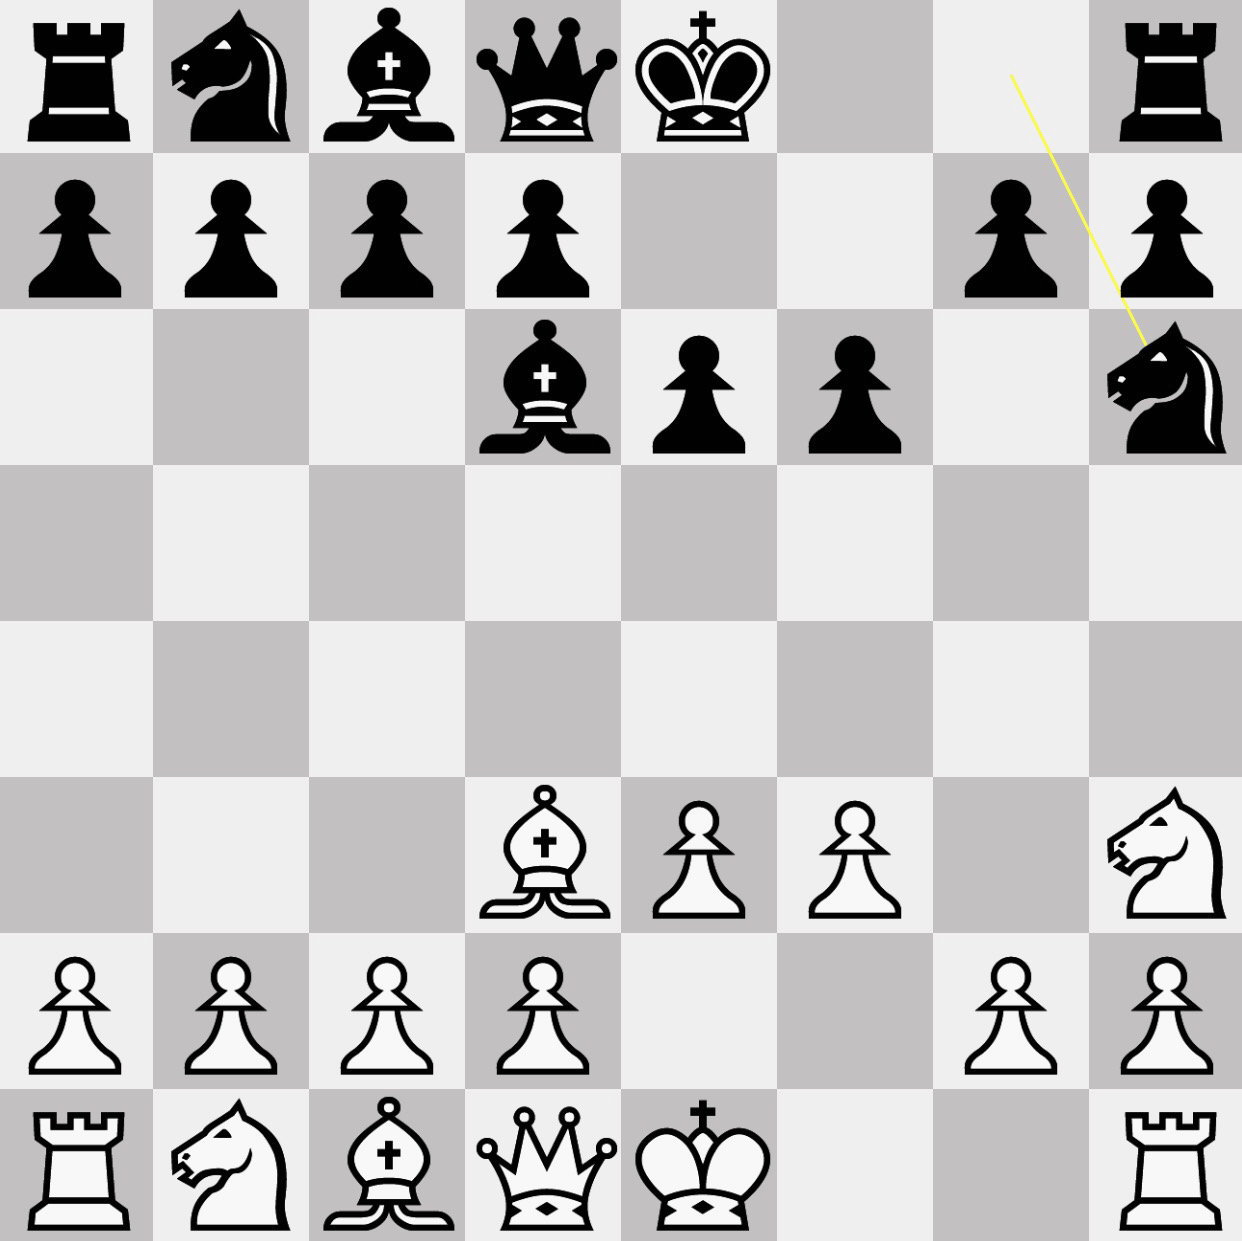 チェス『キャスリング』の意味